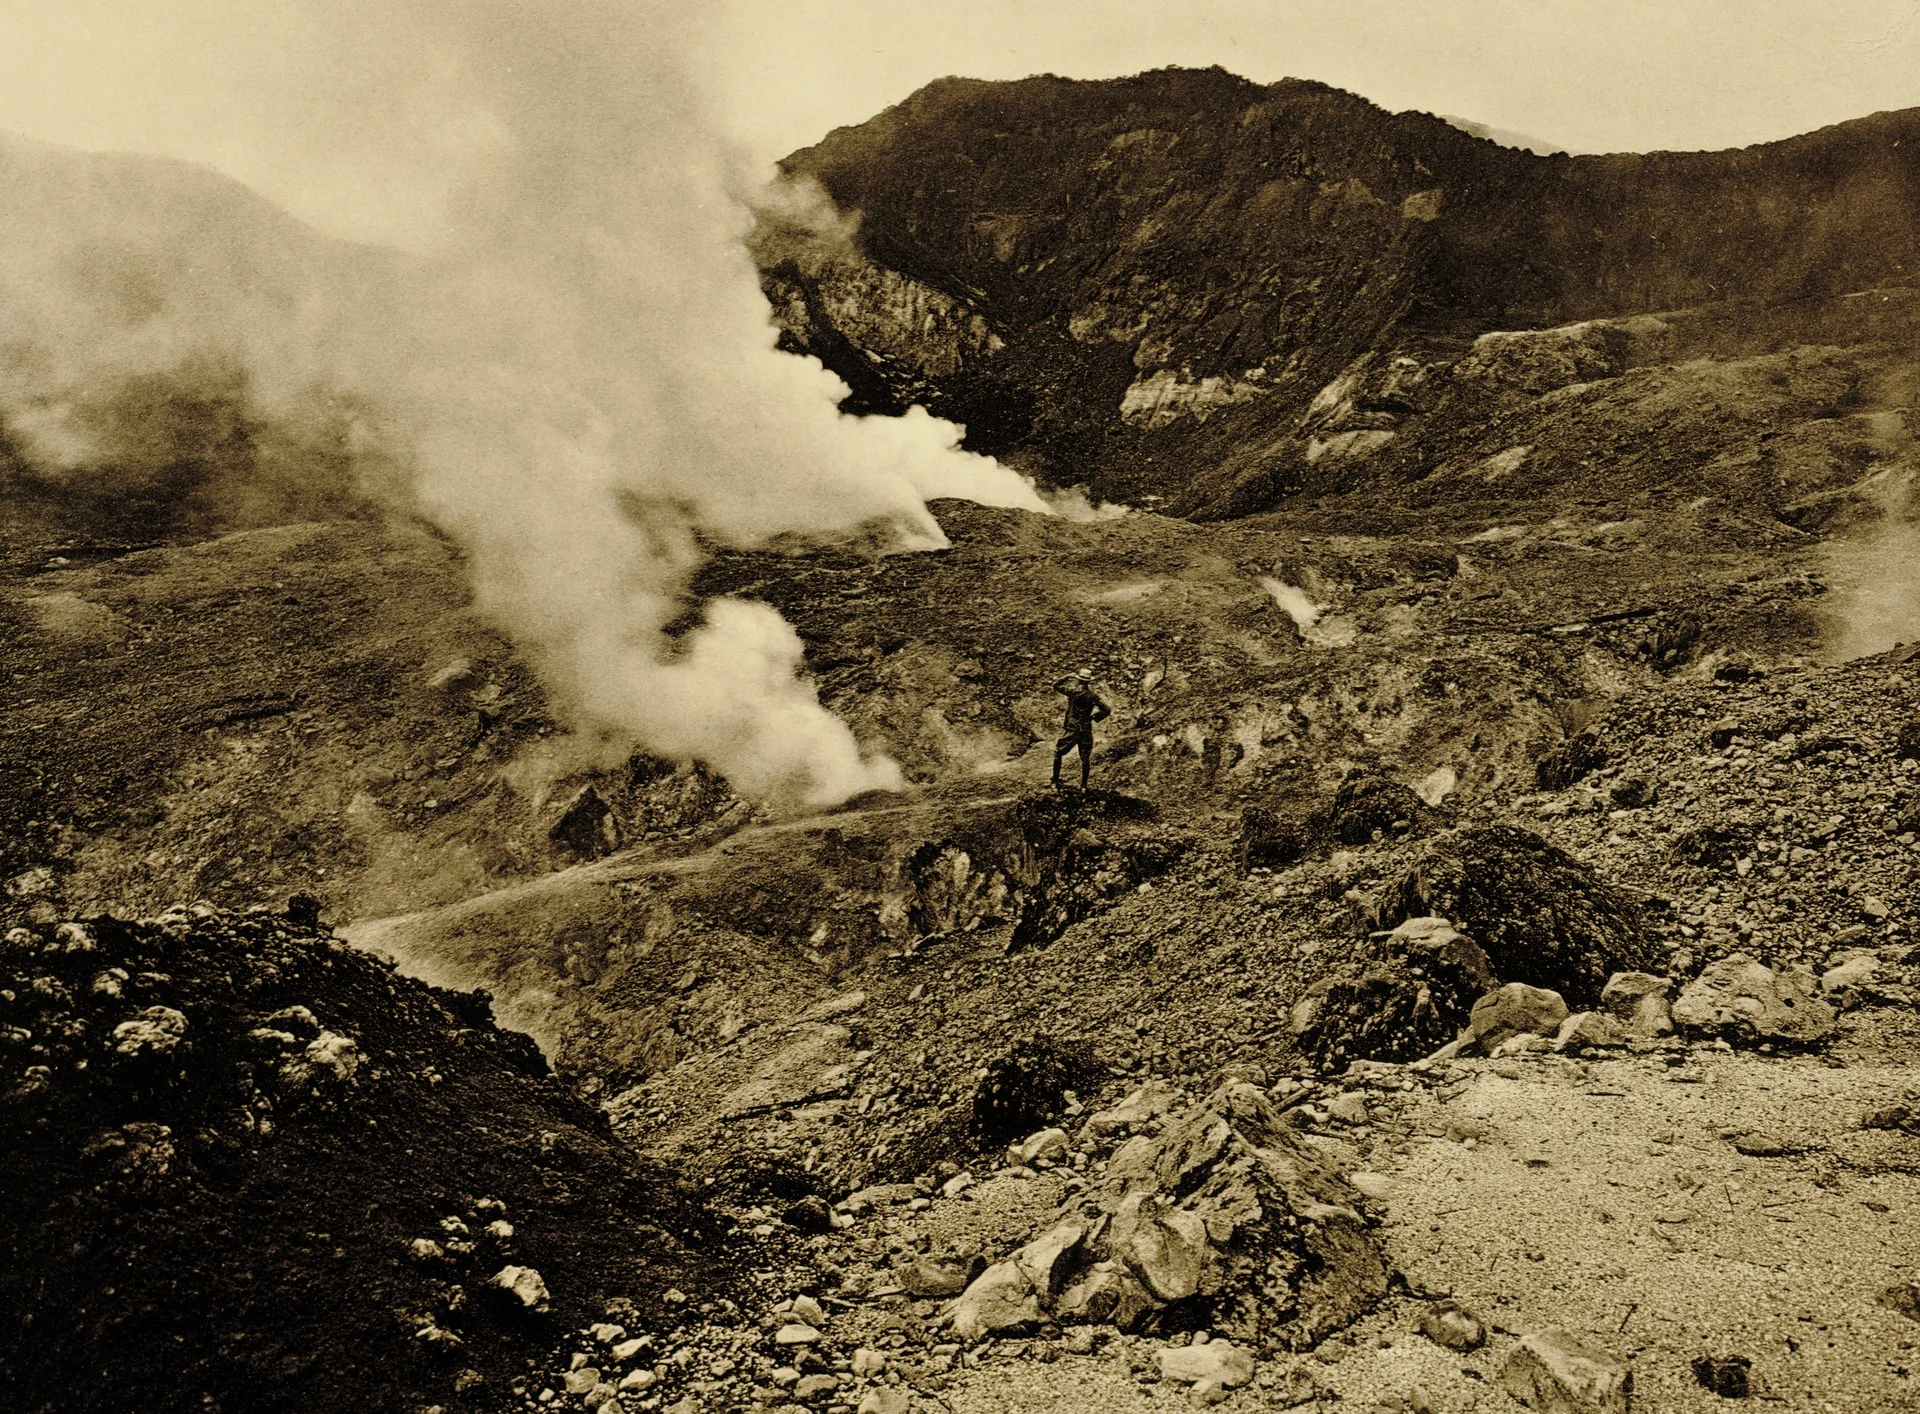 KITLV - 75176 - Kurkdjian, Fotograaf George P. Lewis, aldaar werkzaam - Sourabaya, Java - Volcano Gunung Papandayan, West Java - circa 1920.tif